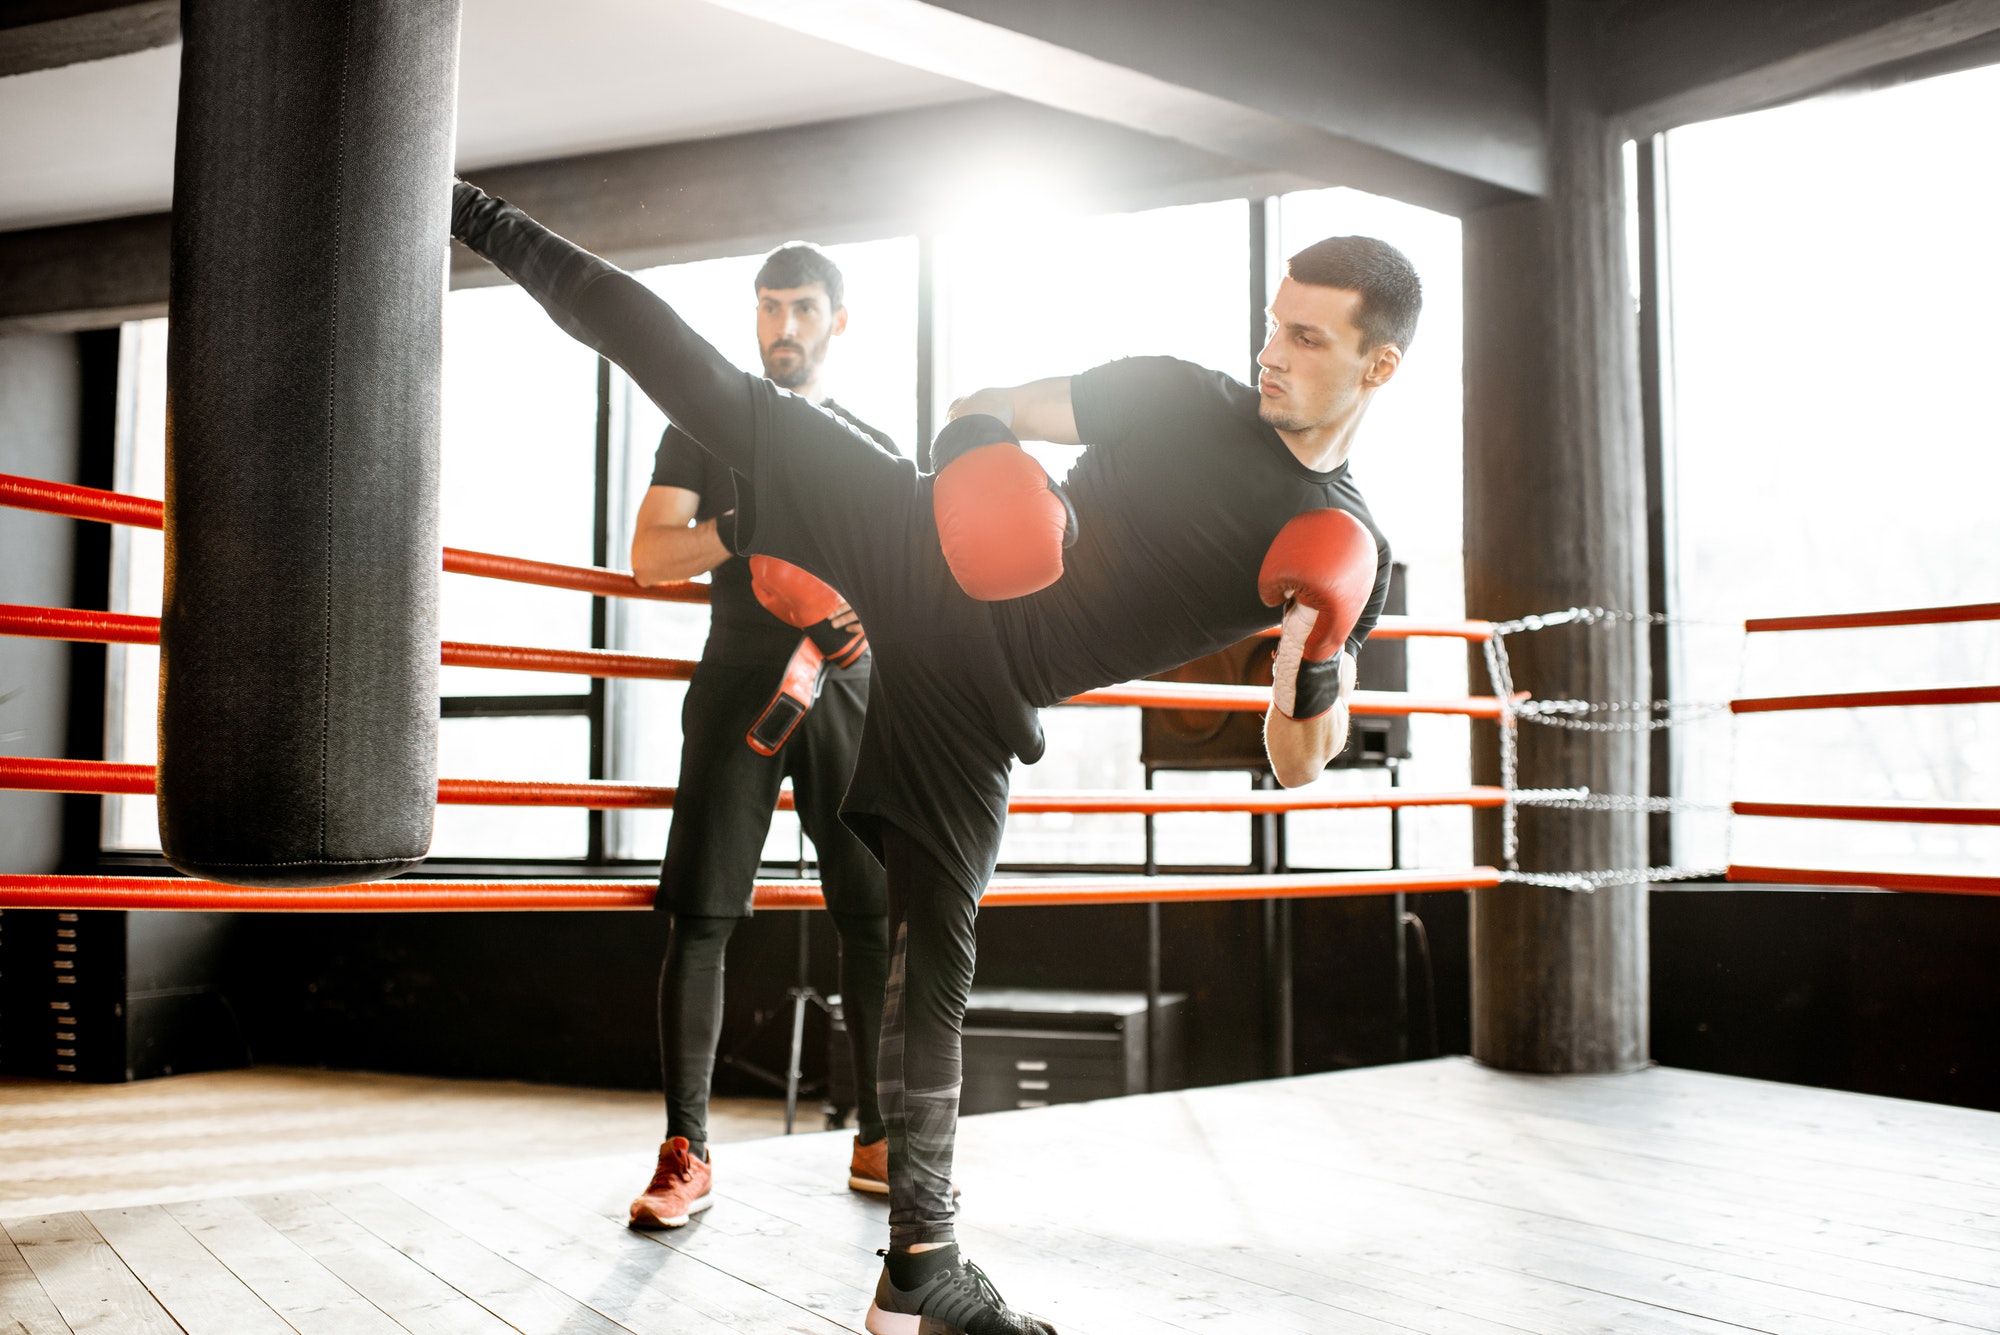 kickboxer-training-with-punching-bag.jpg